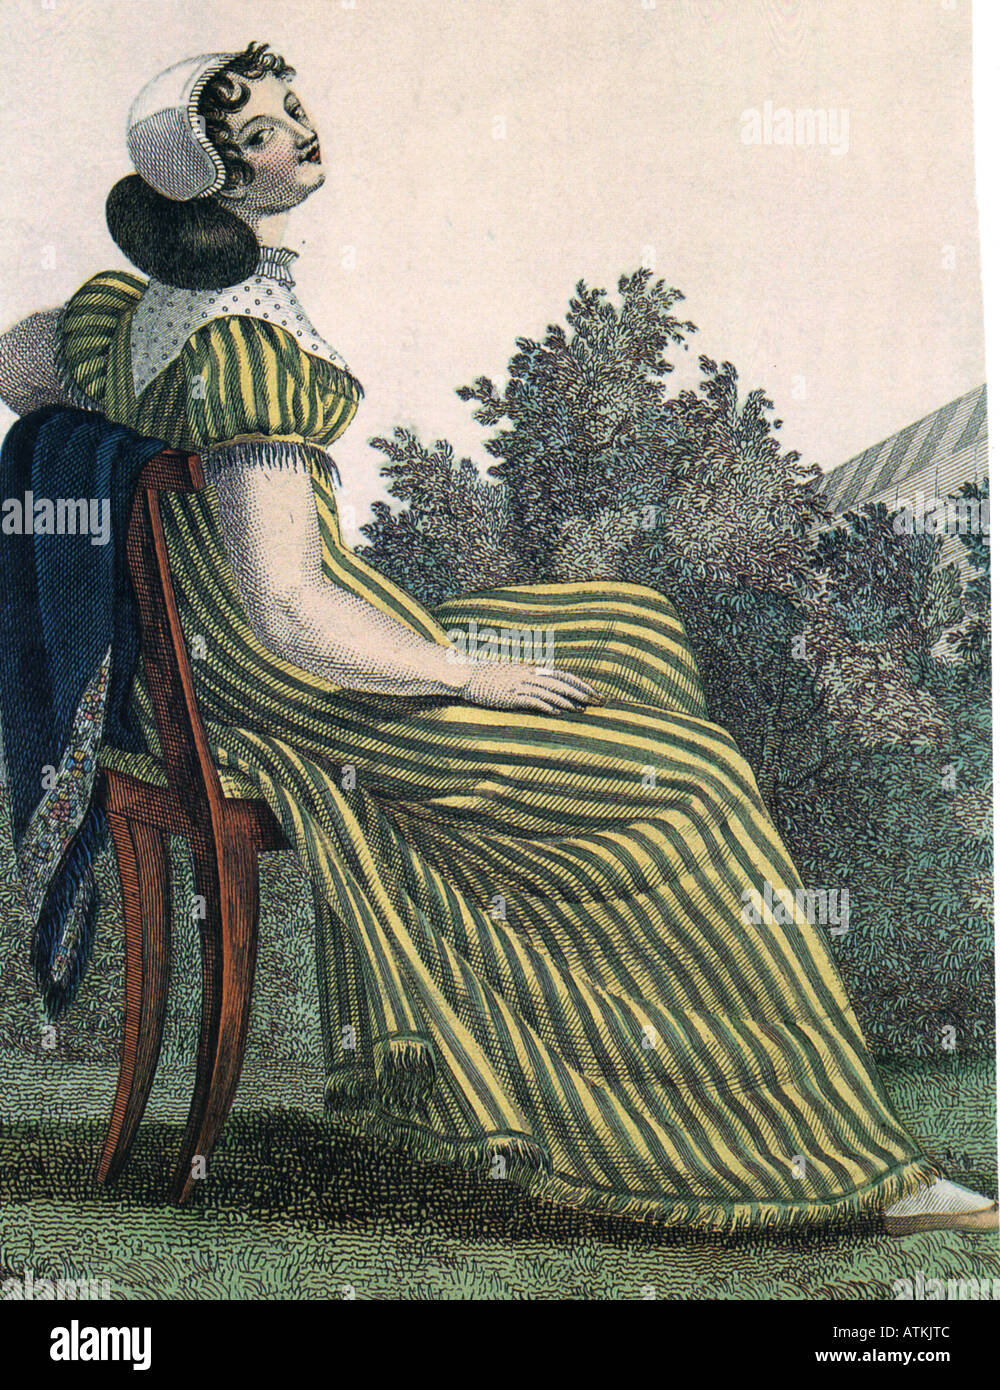 MADAME BOVARY grabado desde una temprana edición de Gustave Flaubert s novela publicada por primera vez en 1857 Foto de stock